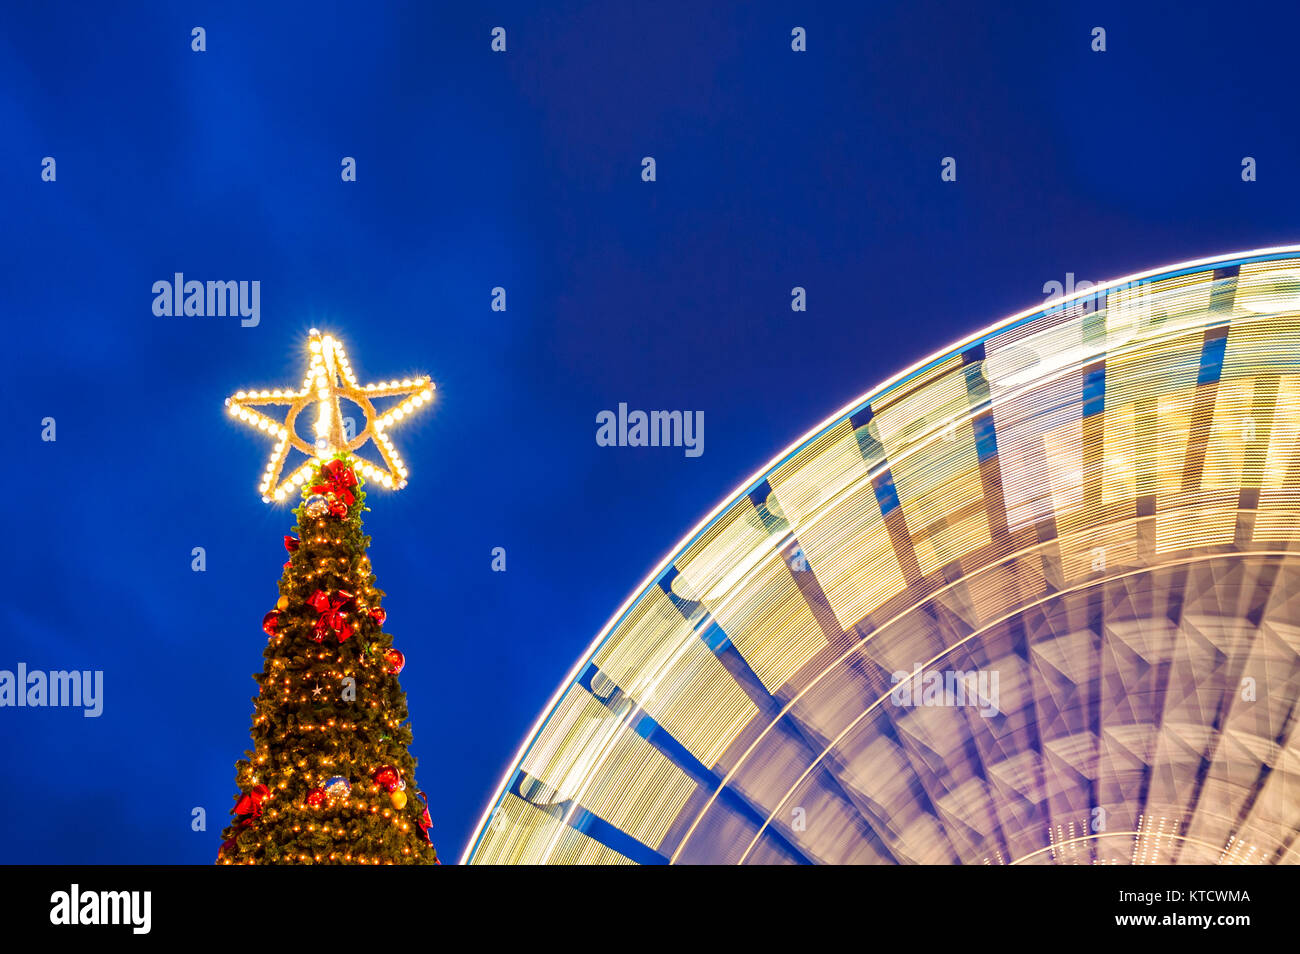 Arbre de Noël en plein air avec grande roue tournante Banque D'Images